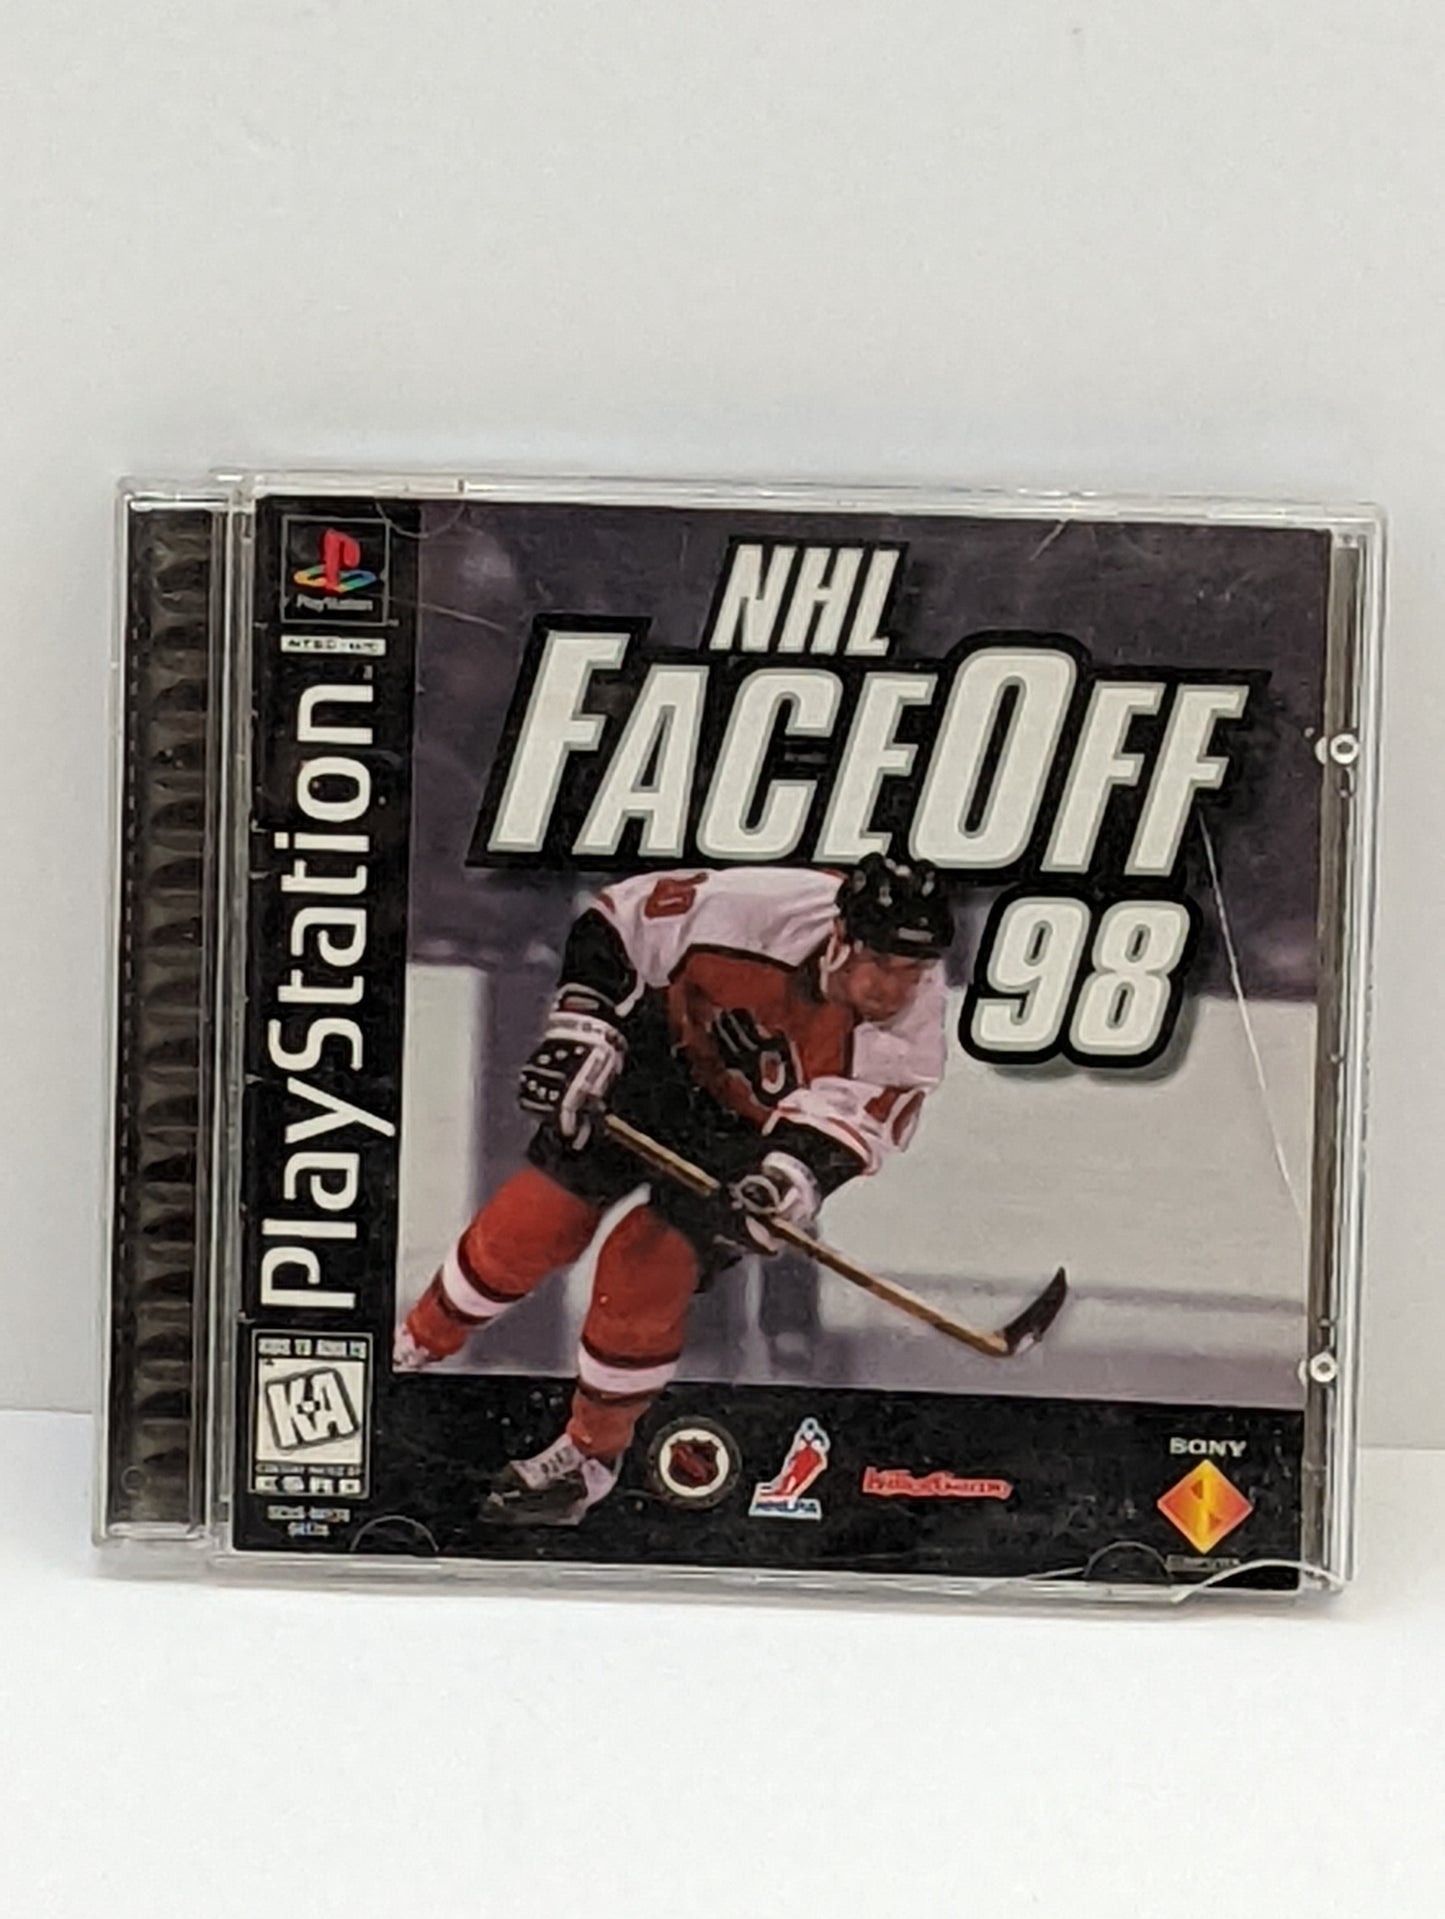 PlayStation NHL FaceOff 98